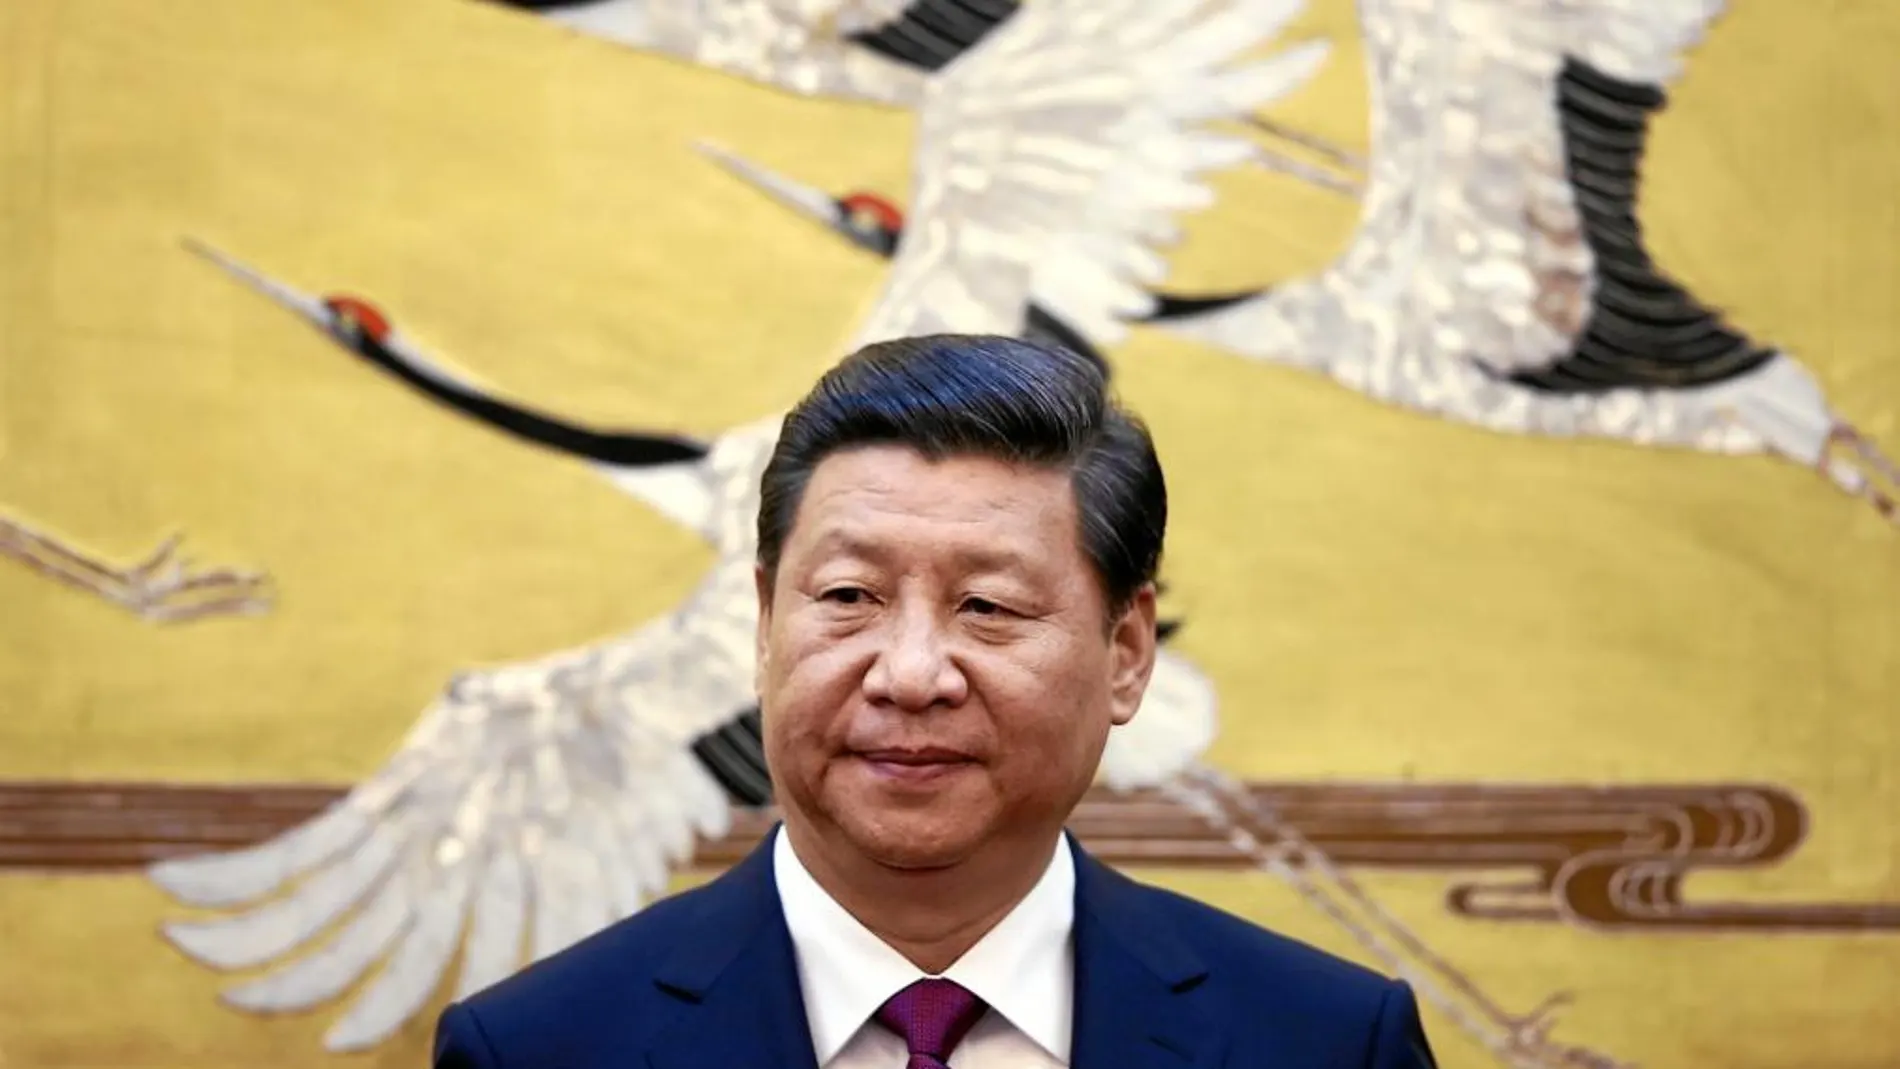 El presidente chino, Xi Jinping, durante una recepción en Pekín